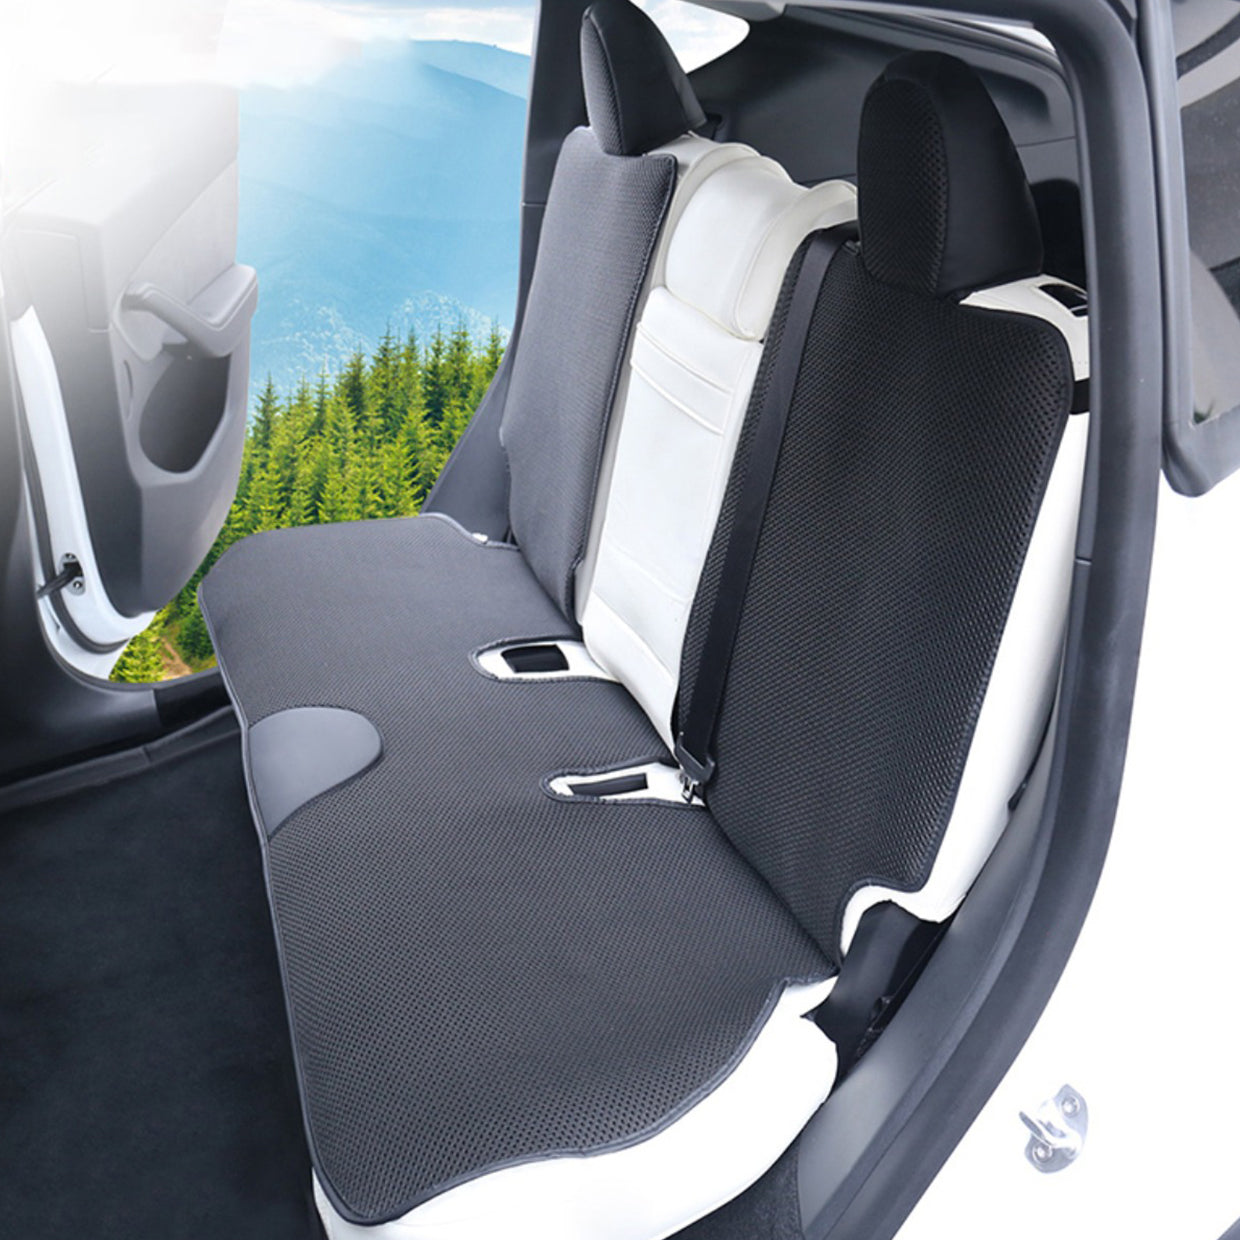 1Pcs 3D Air Cushion for Office Chair Car Seat Air Seat Cushion